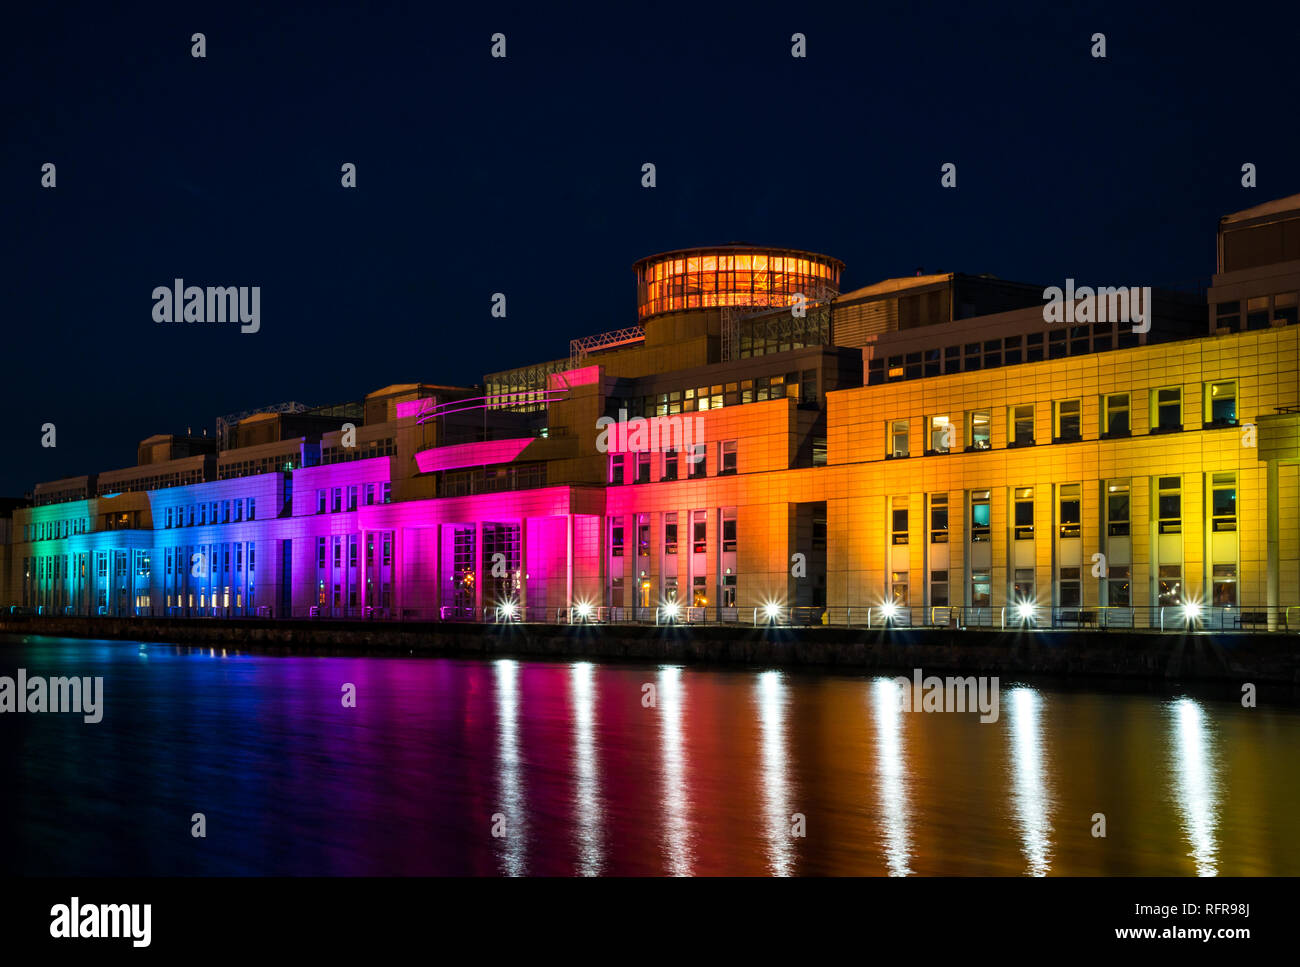 Victoria Quay schottische Regierung Gebäude, in Regenbogenfarben leuchten in der Nacht für den Internationalen Tag gegen Homophobie, Leith, Edinburgh, Schottland, Großbritannien Stockfoto